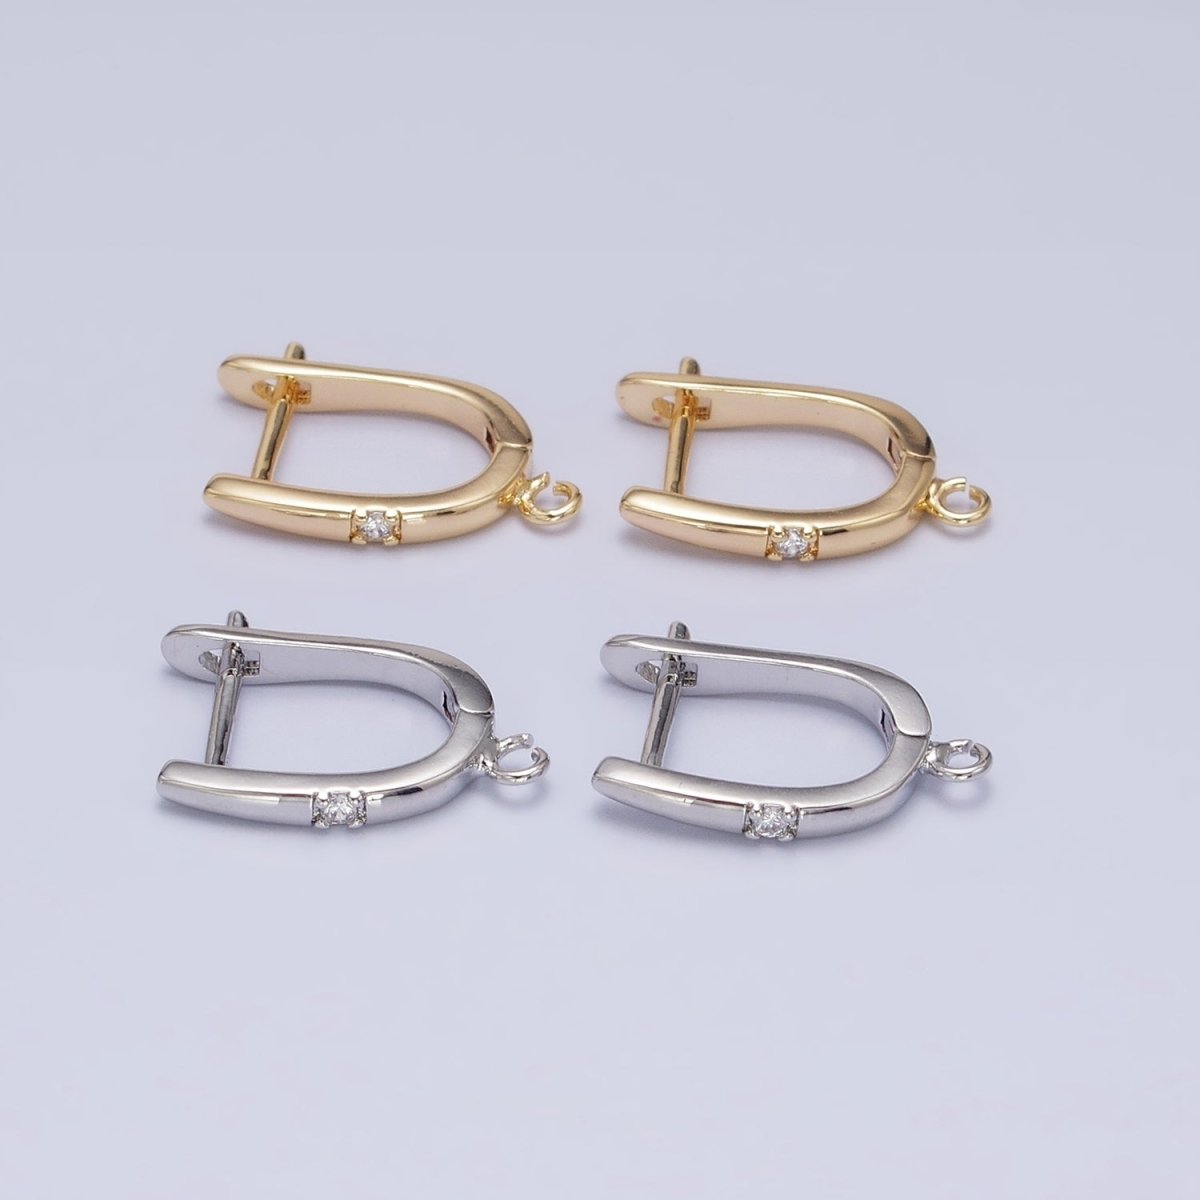 Silver, Gold Round Clear CZ Open Loop 18mm English Lock Earrings | Z-204 Z-216 - DLUXCA